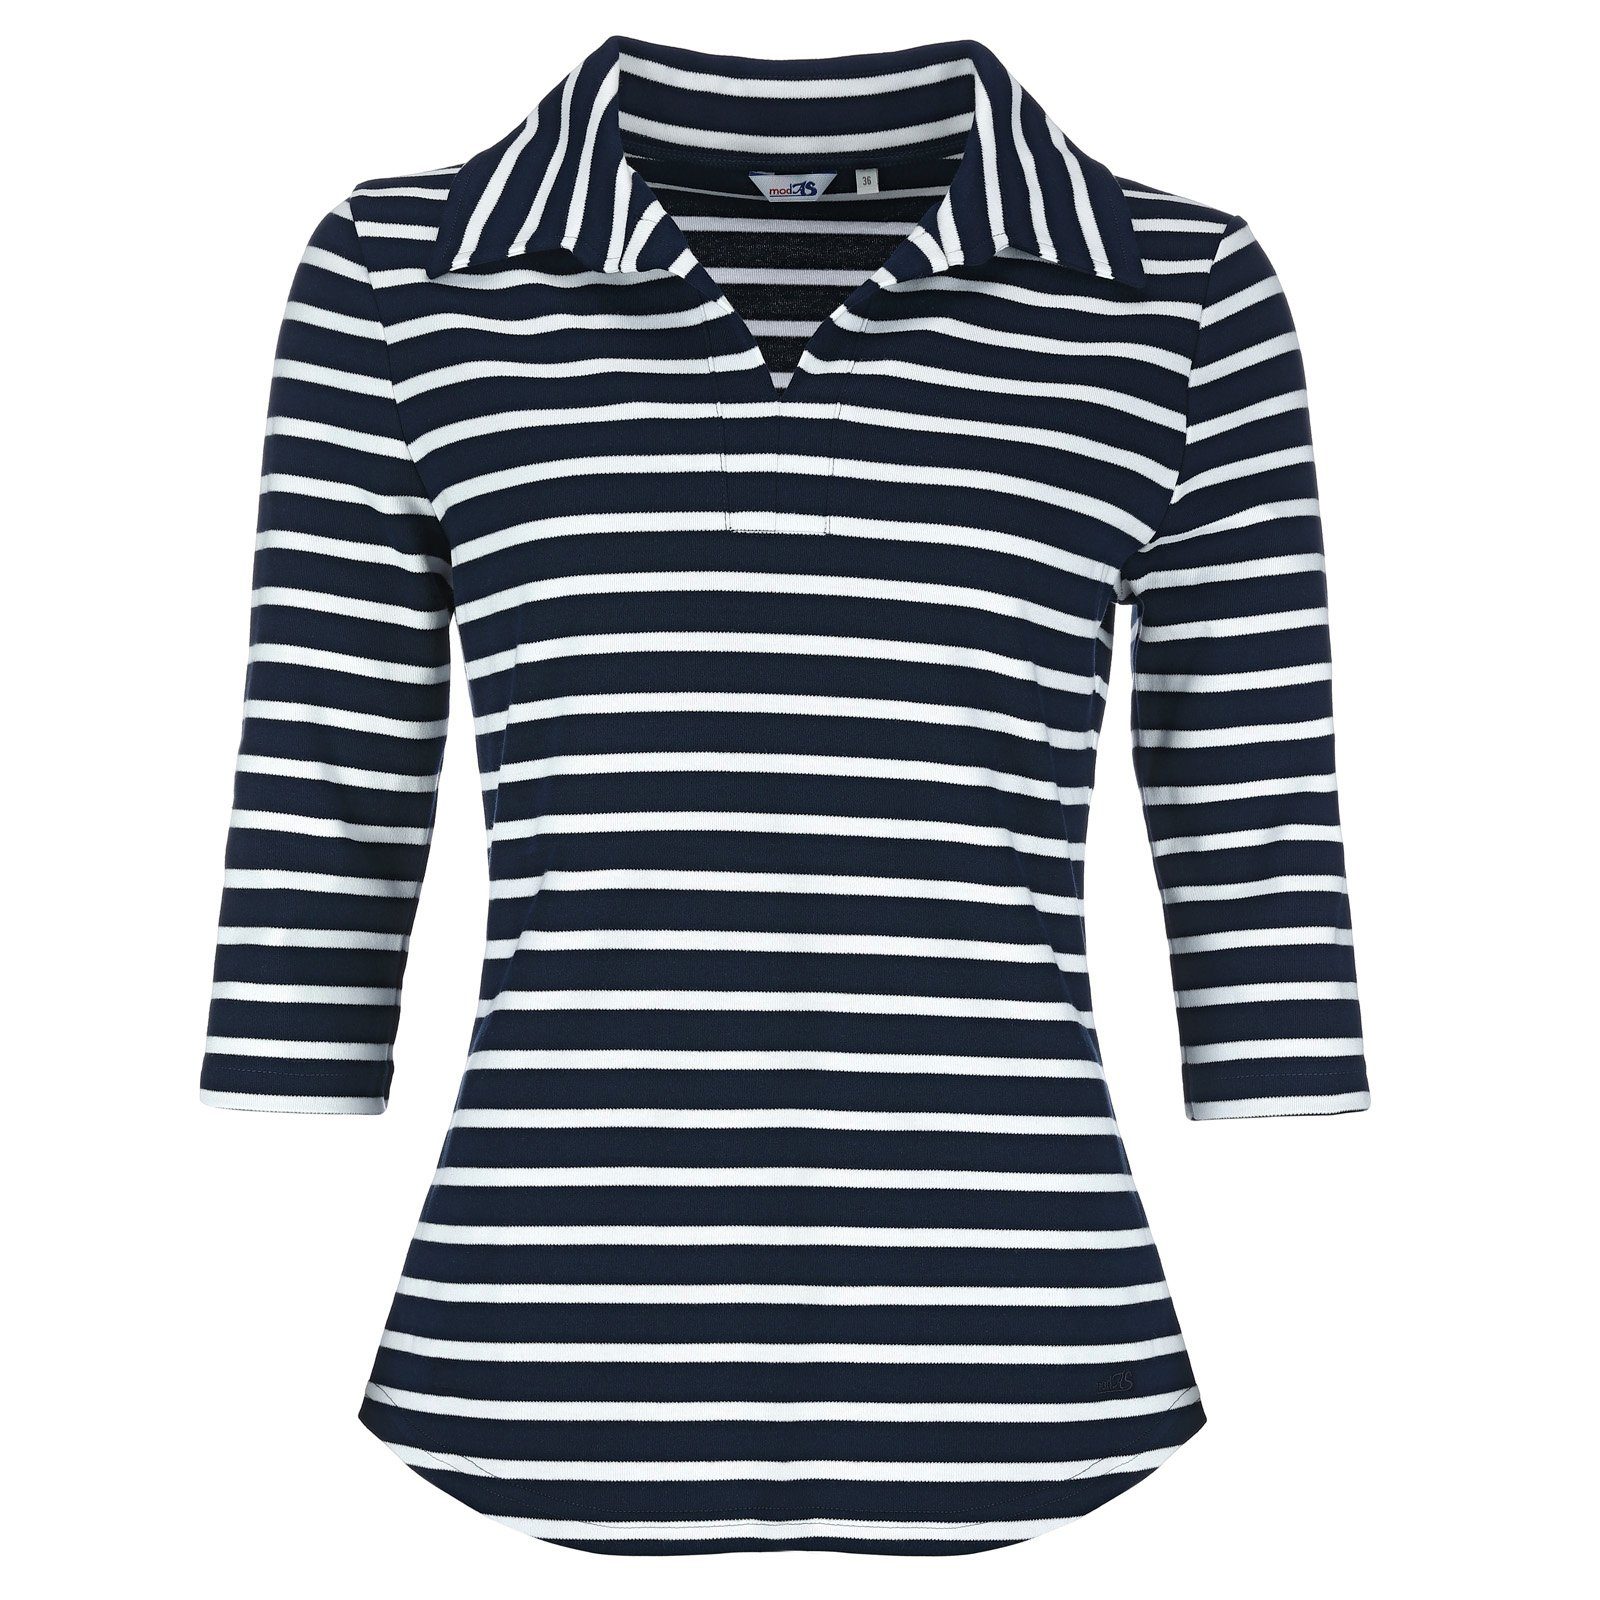 modAS Poloshirt Damen Shirt mit Polokragen und Streifen aus Baumwolle (05) blau / weiß